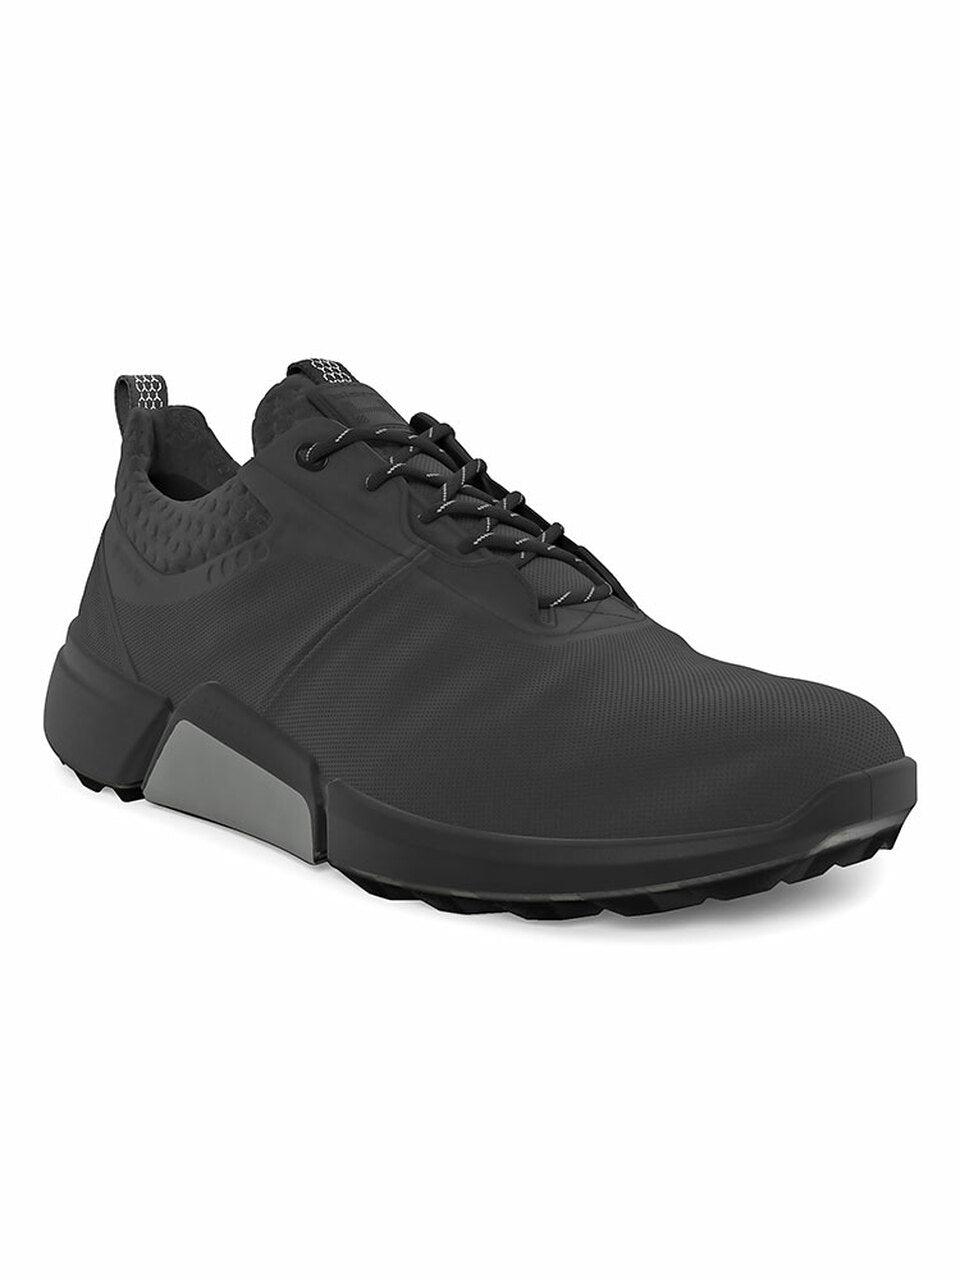 Ecco Mens BIOM Hybrid 4 Golf Shoes- Black